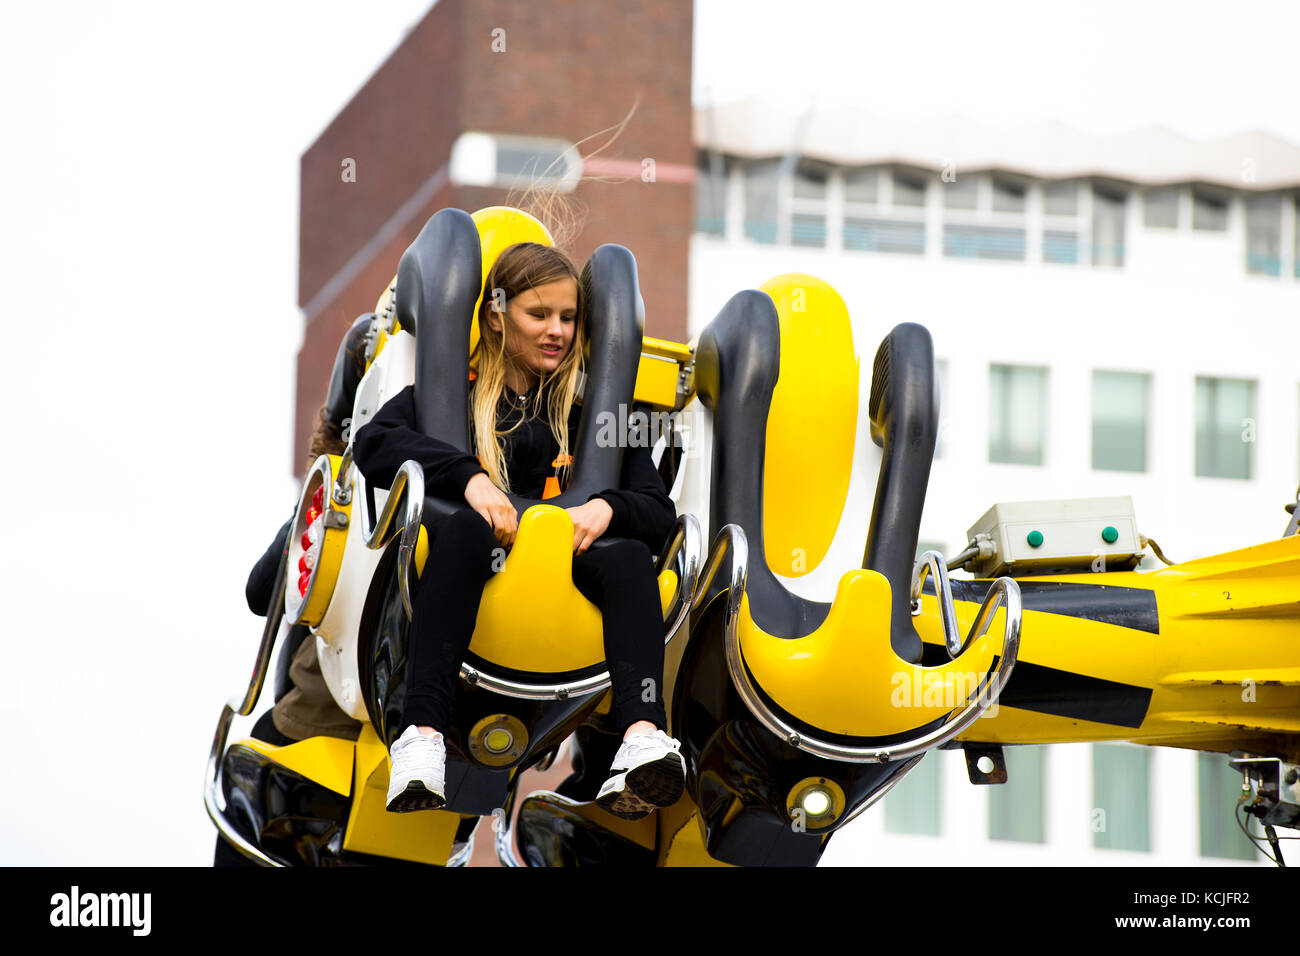 Leiden, Pays-Bas 3 octobre 2017. La foire locale parc d'attractions avec manèges avec une jeune fille assise dans un éditorial d'attraction ride. Banque D'Images